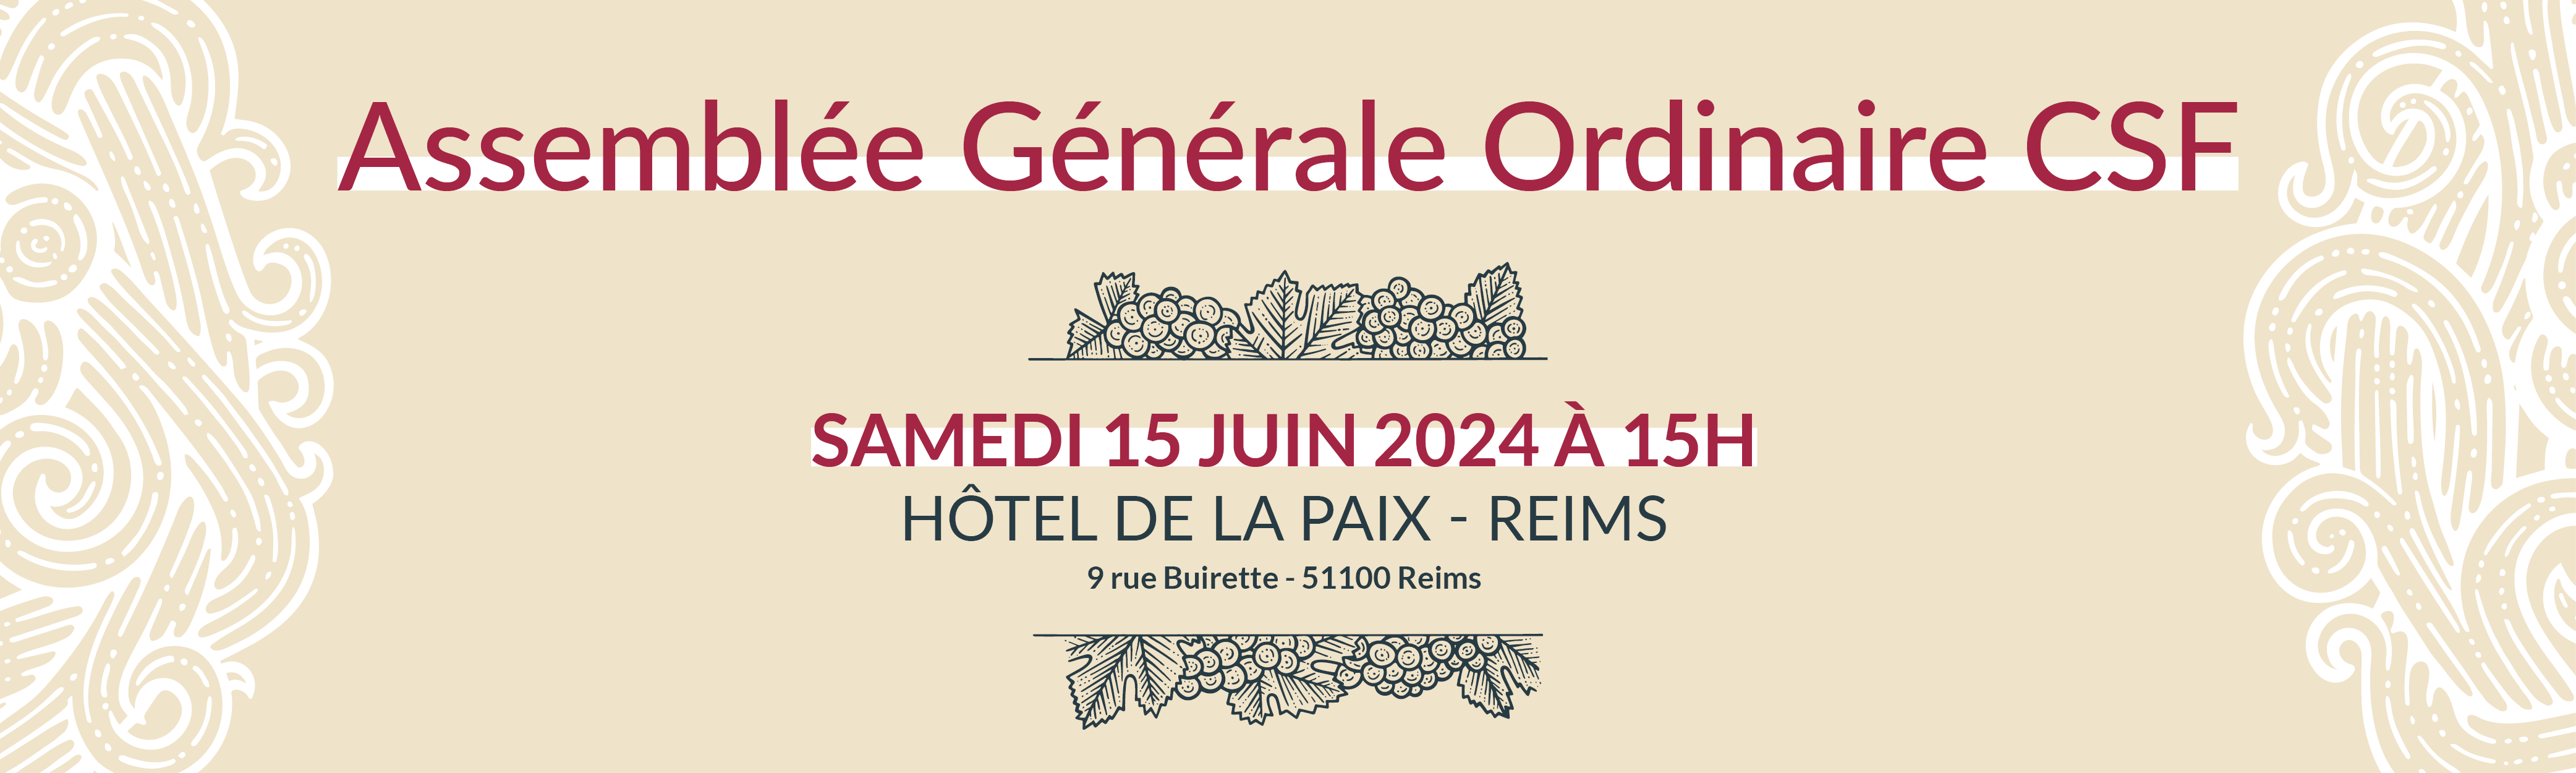 Groupe CSF : participez à l'Assemblée Générale Ordinaire du CSF le 15 juin 2024 à Reims